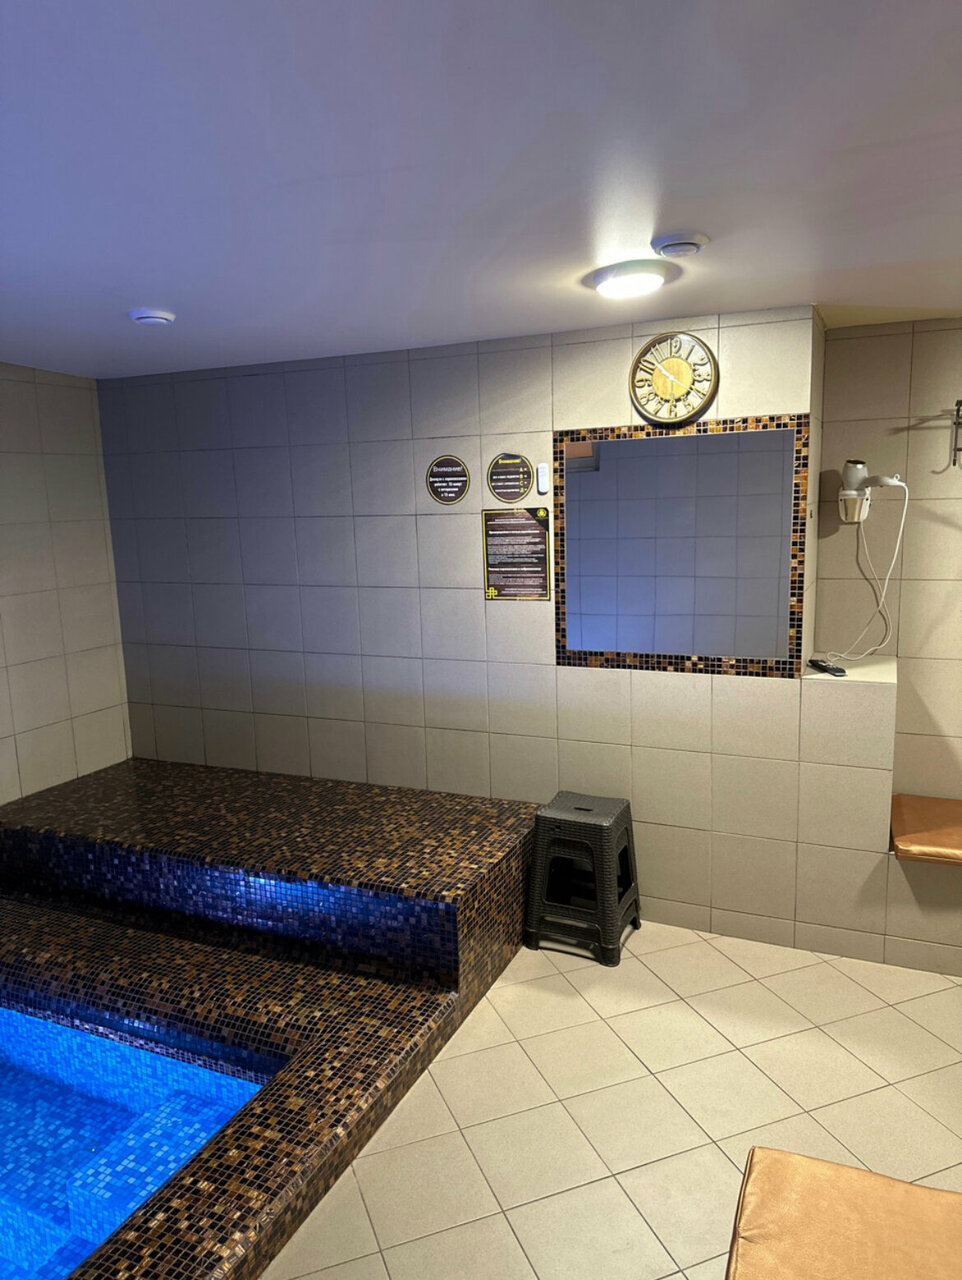 «7 мест, где попариться в бане в Набережных Челнах» фото материала